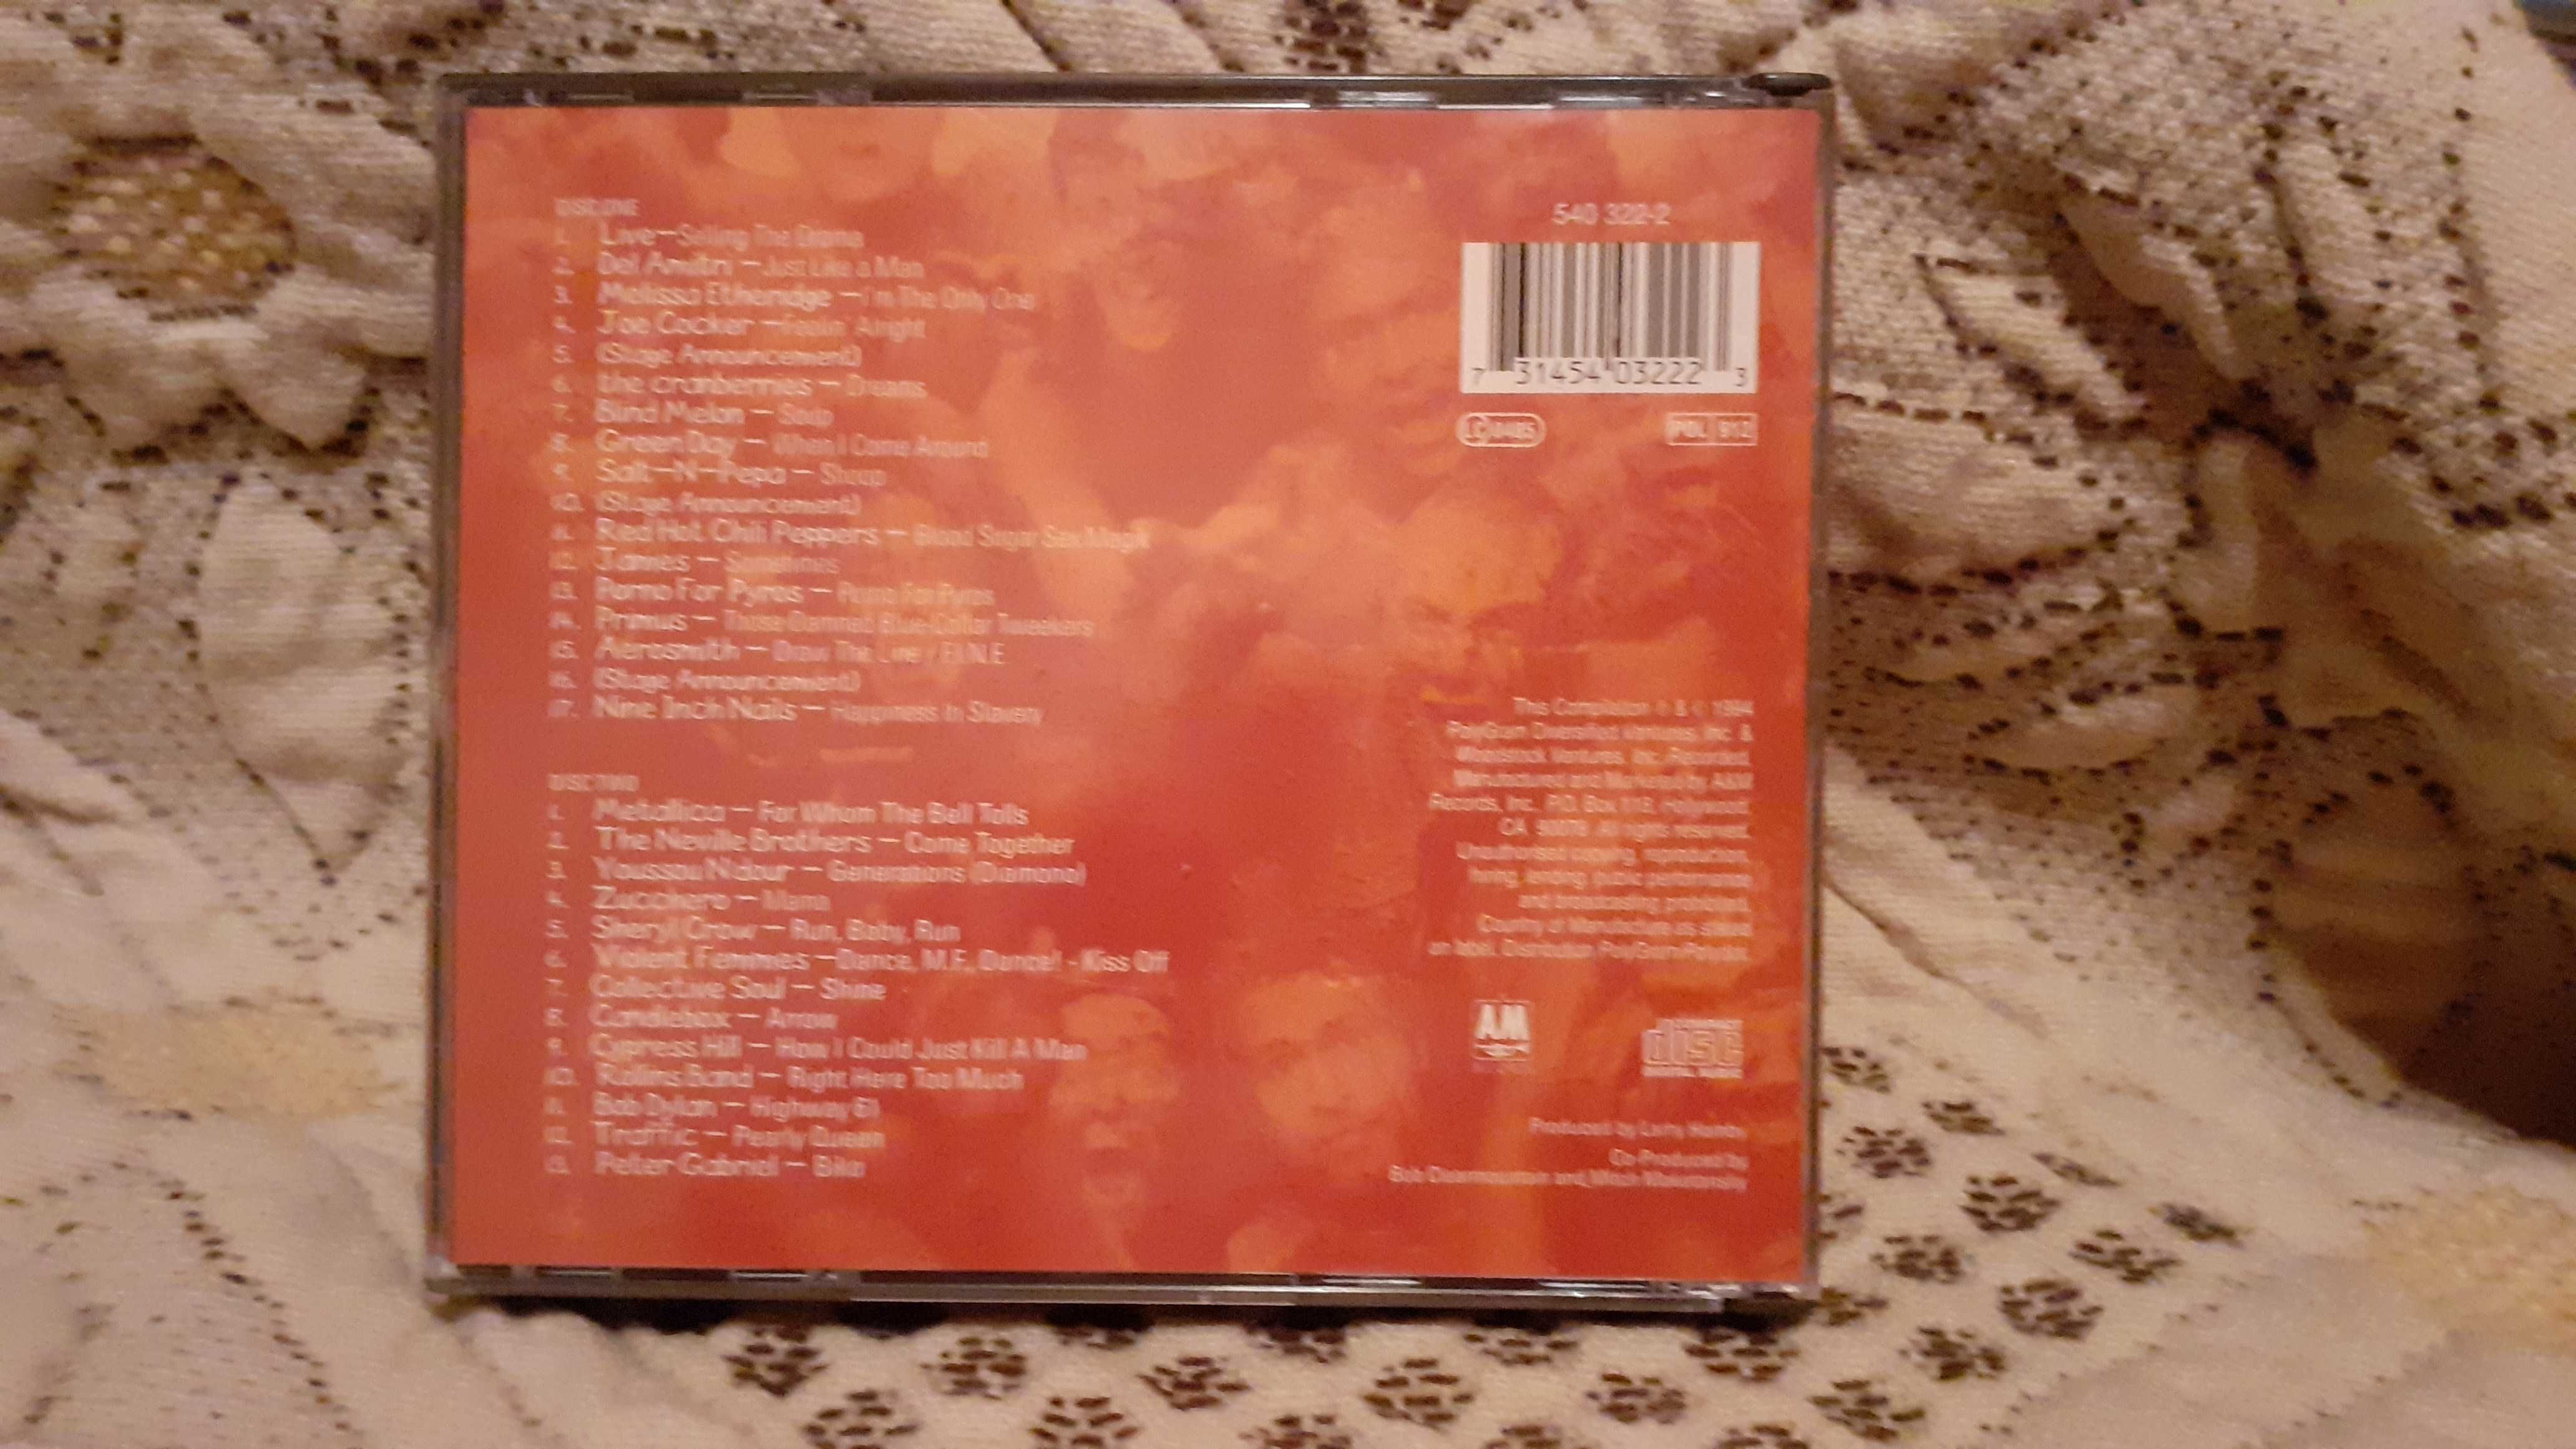 Woodstock 94 – Album Duplo (ORIGINAL)